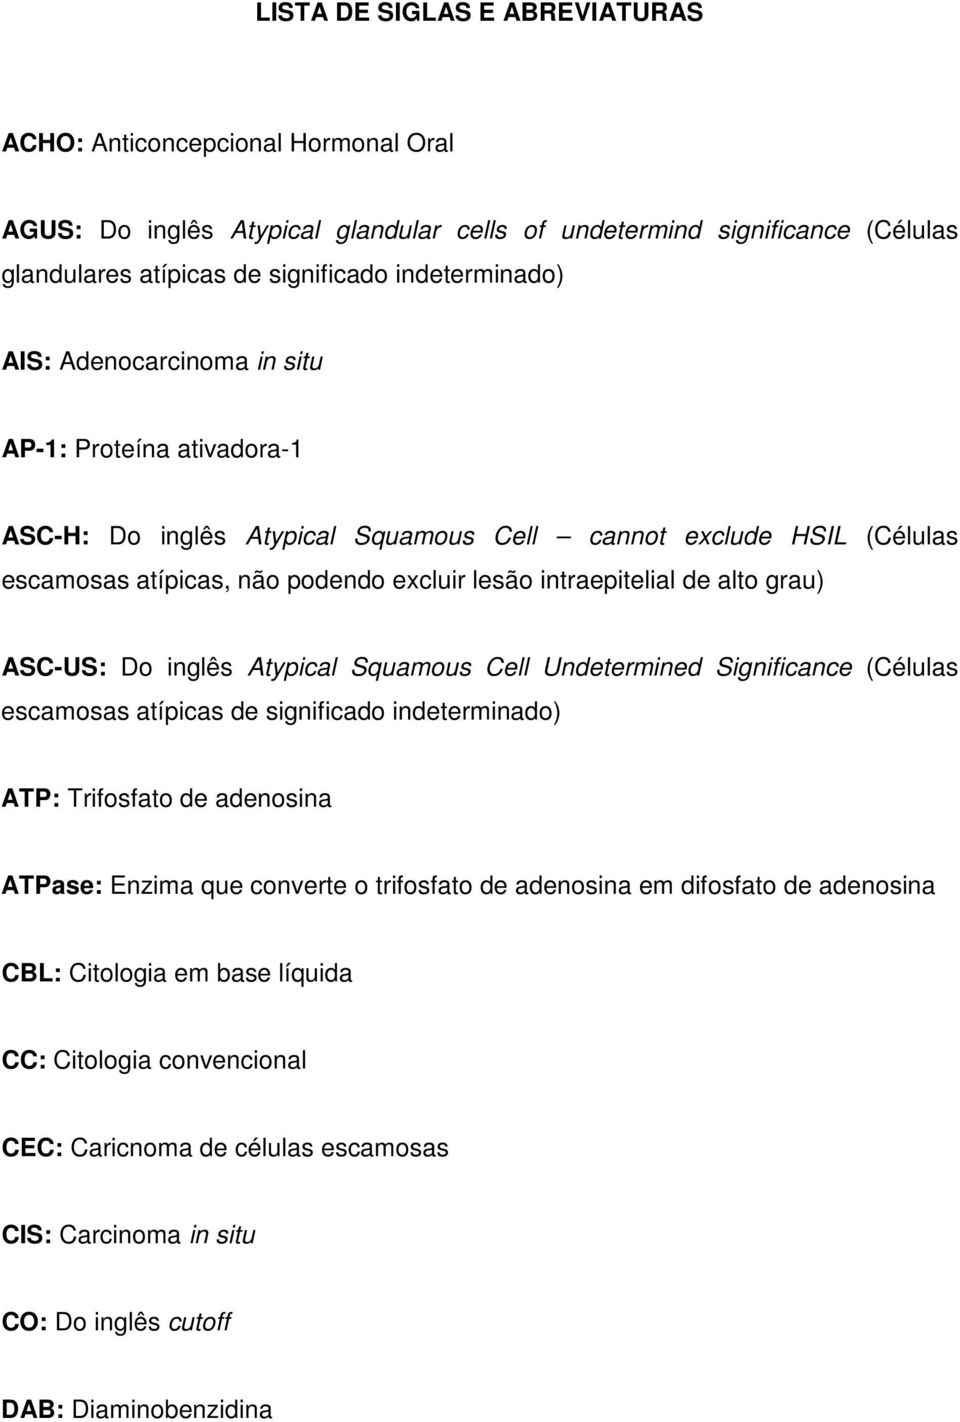 intraepitelial de alto grau) ASC-US: Do inglês Atypical Squamous Cell Undetermined Significance (Células escamosas atípicas de significado indeterminado) ATP: Trifosfato de adenosina ATPase: Enzima